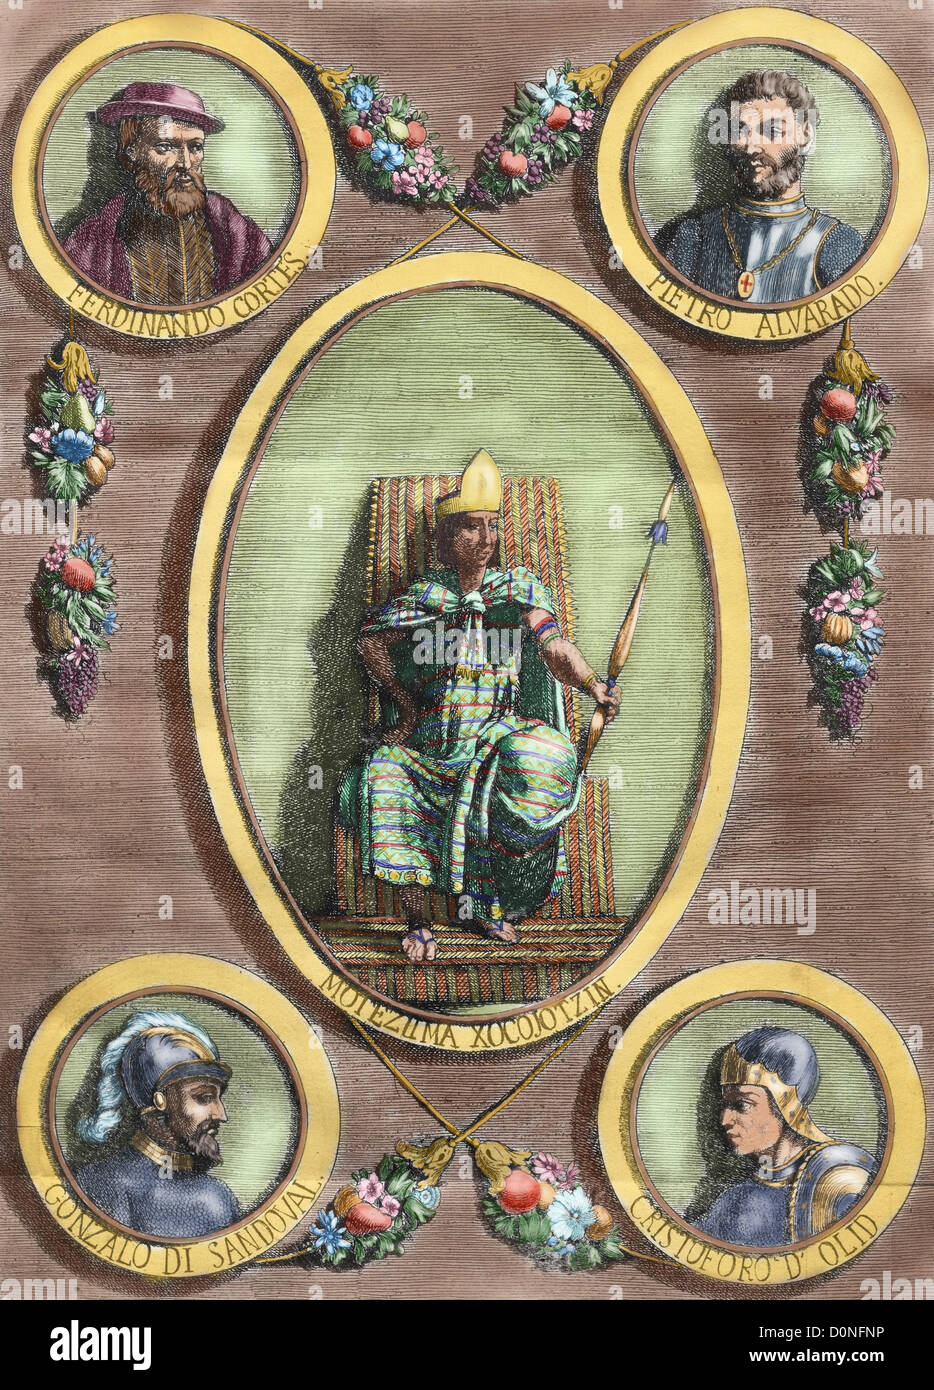 Moctezuma II, Hernan Cortes, Pedro de Alvarado, Gonzalo de Sandoval and Cristobal de Olid. Colored engraving. Stock Photo